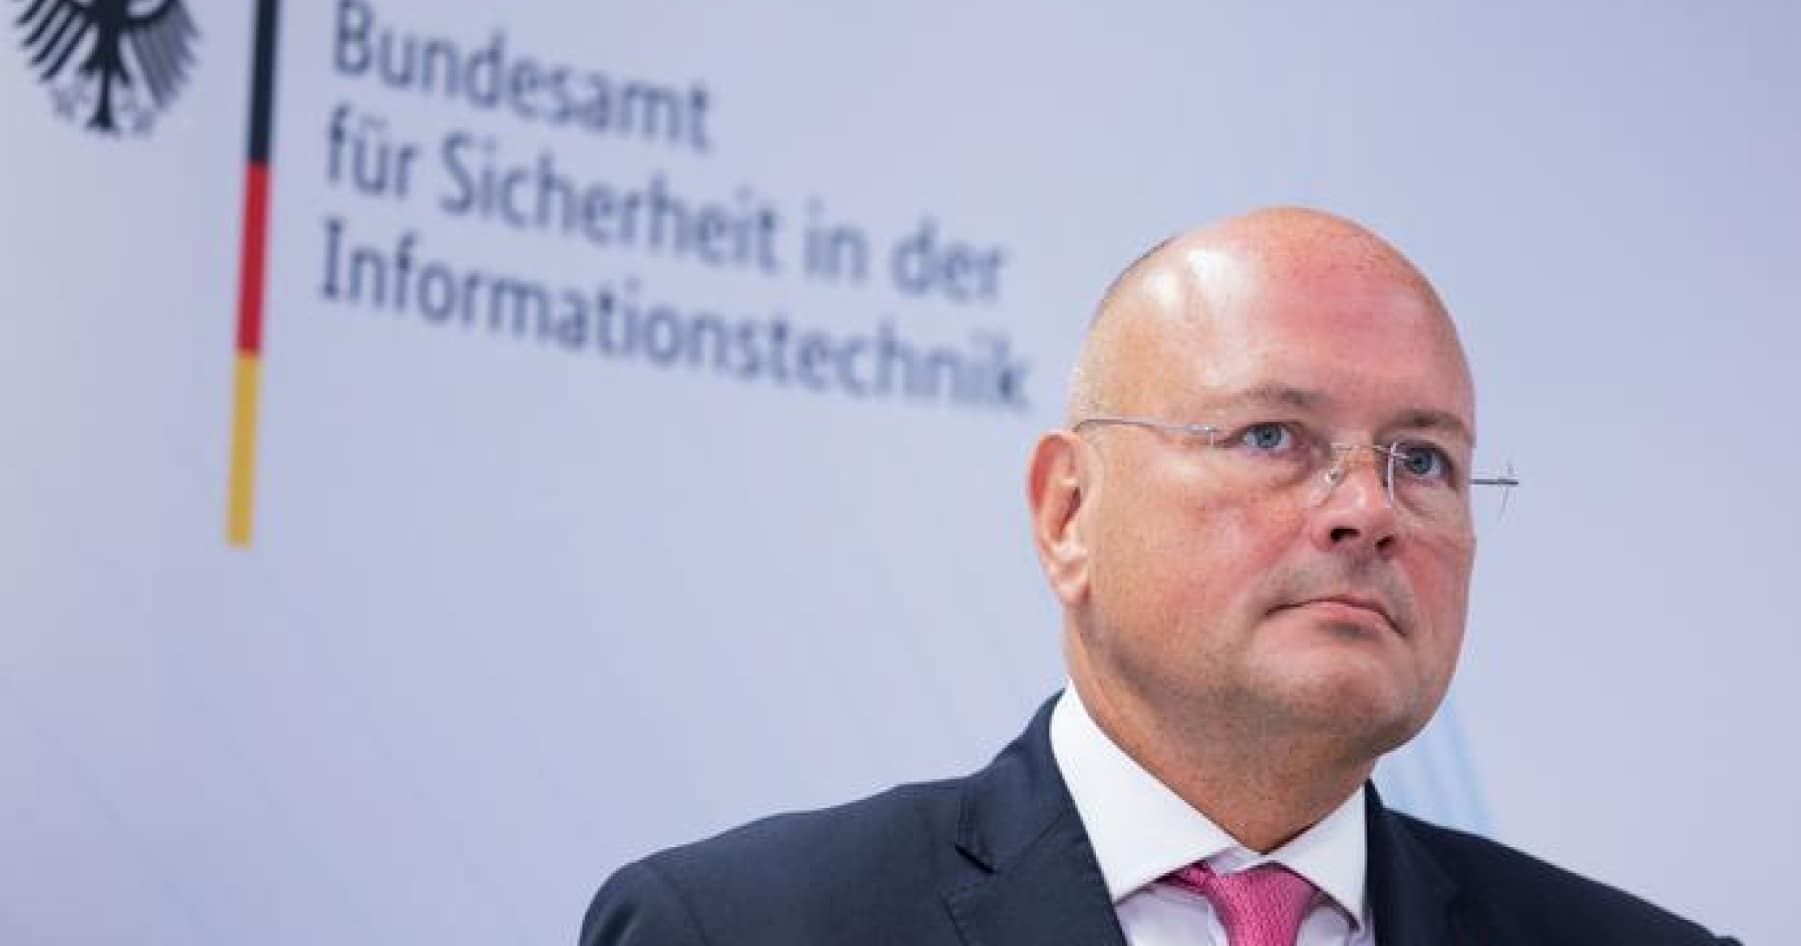 Керівнику відділу кібербезпеки Німеччини загрожує звільнення через зв’язки з Росією